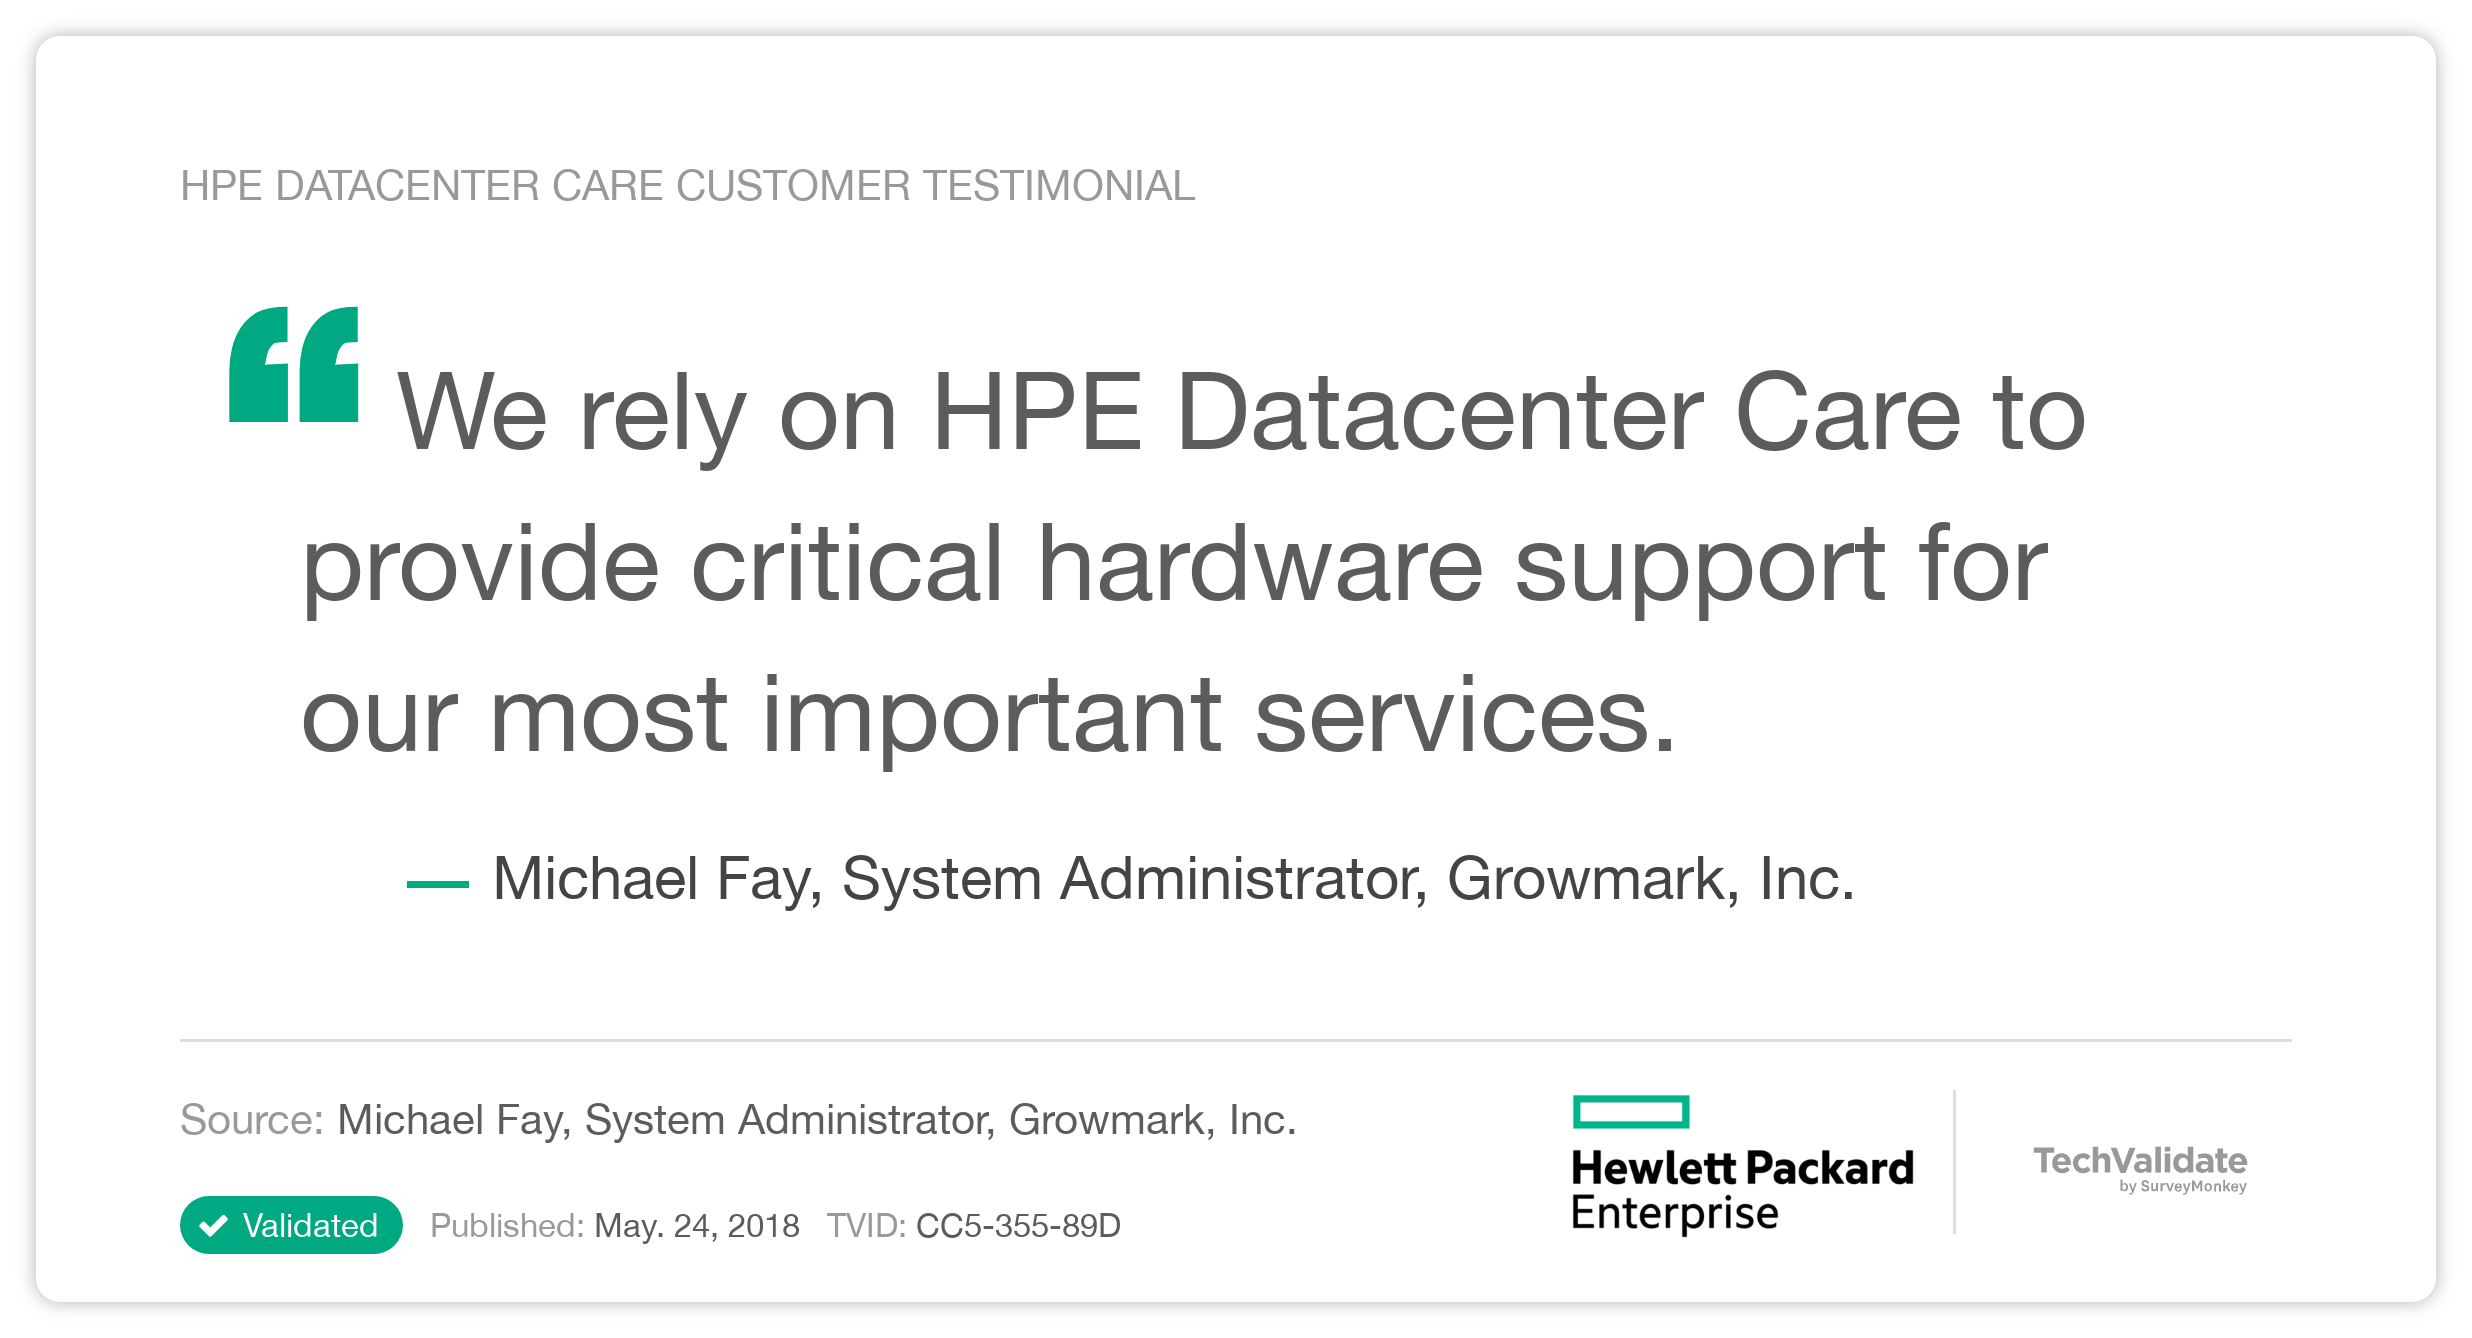 HPE Datacenter Care Customer Testimonial